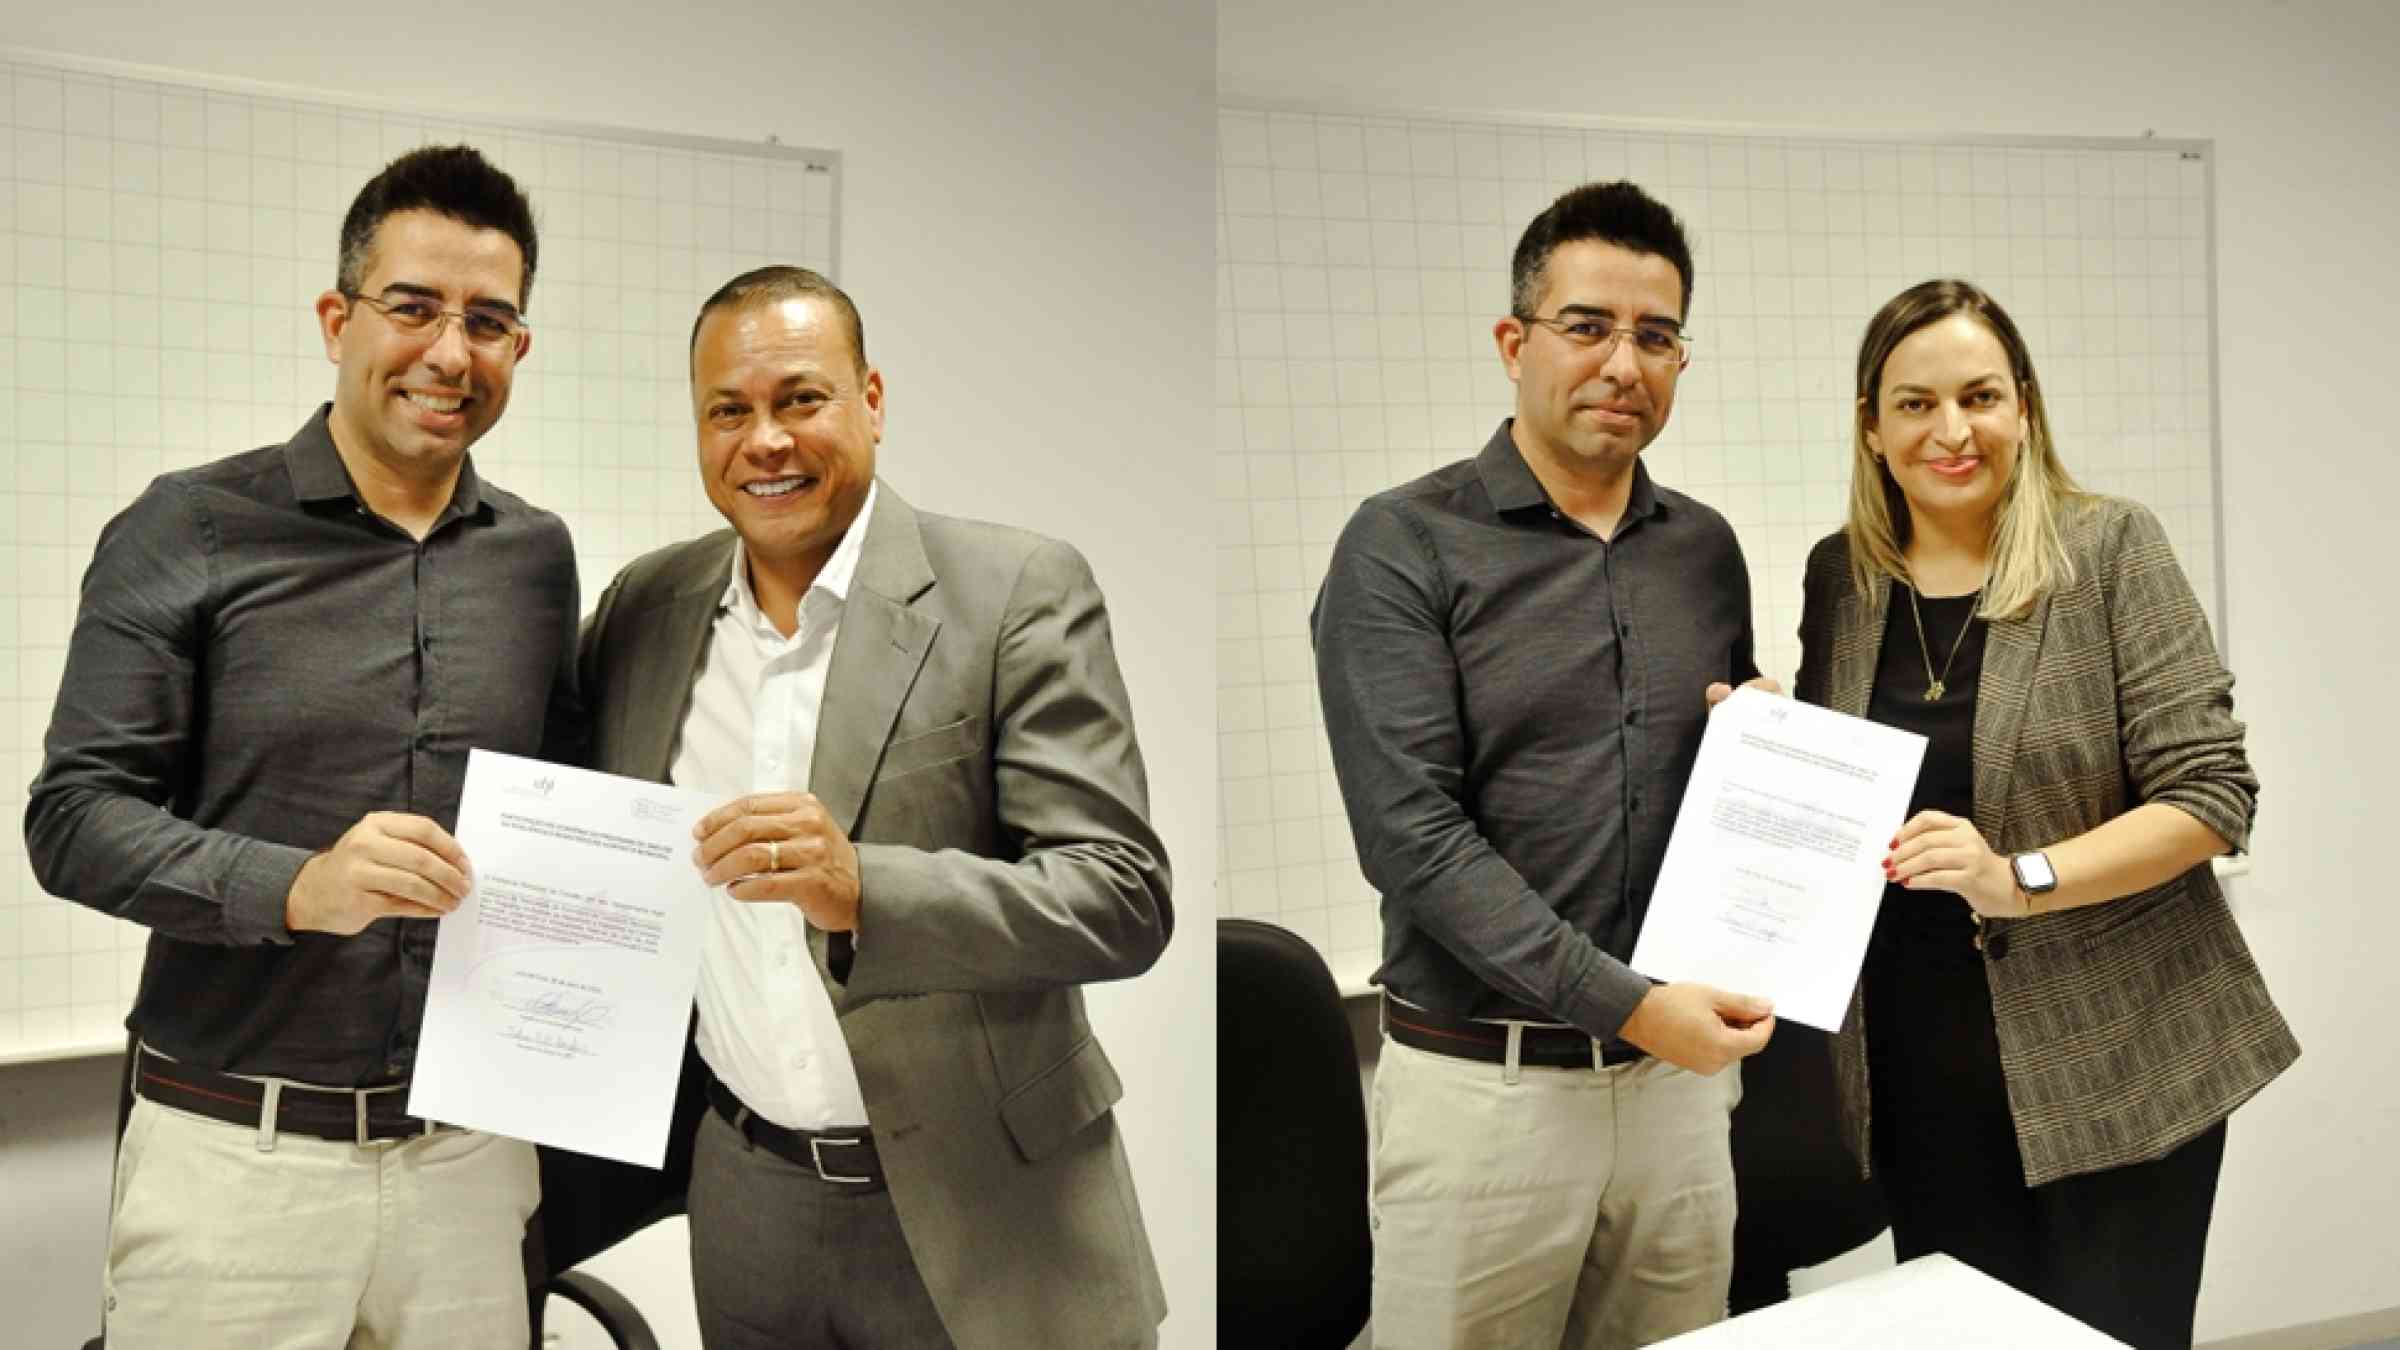 Fabrício Campos (UFJF) al lado de César da Silva Nascimento (Cubatão, SP) y Lorena Rodrigues de Oliveira (Franco da Rocha, SP) con acuerdos de cooperación firmados. 